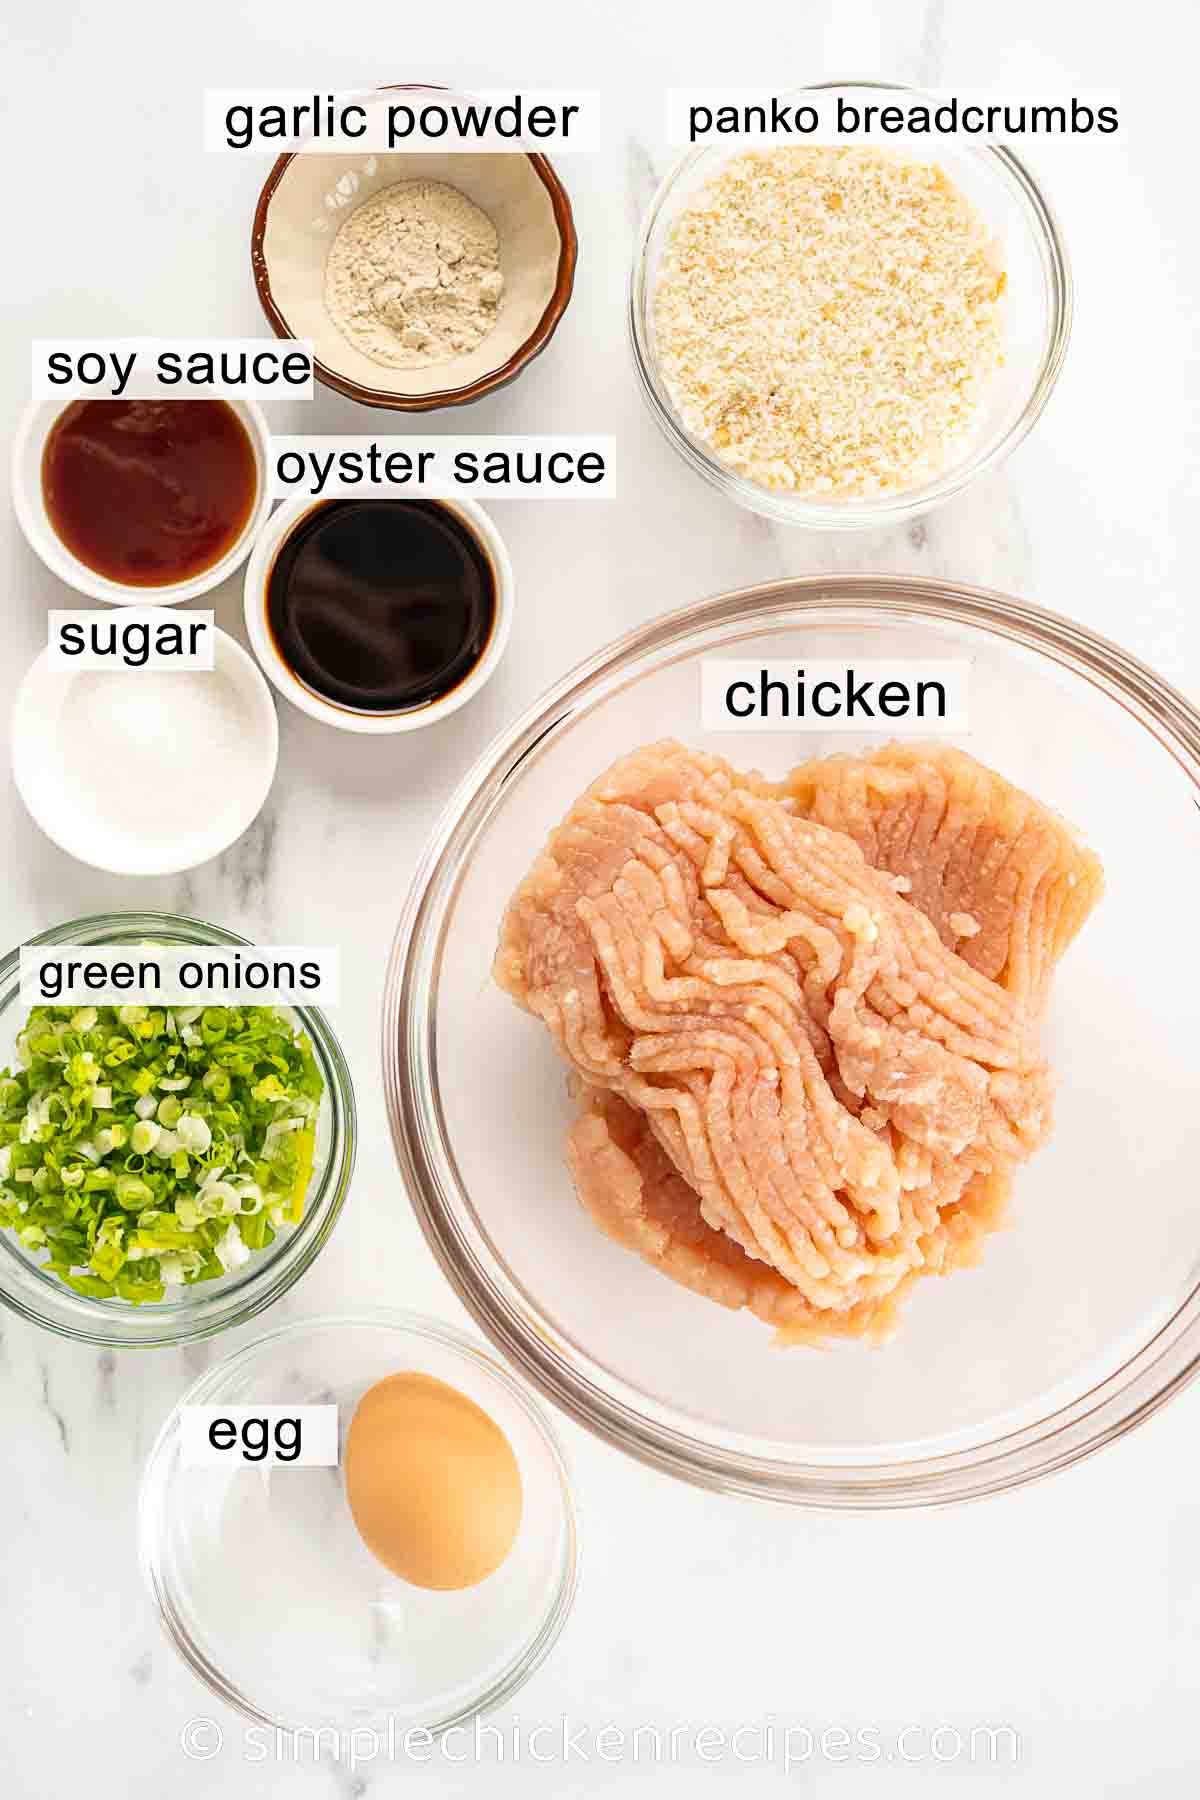 chicken meatballs ingredients: ground chicken, soy sauce, oyster sauce, sugar, panko, egg